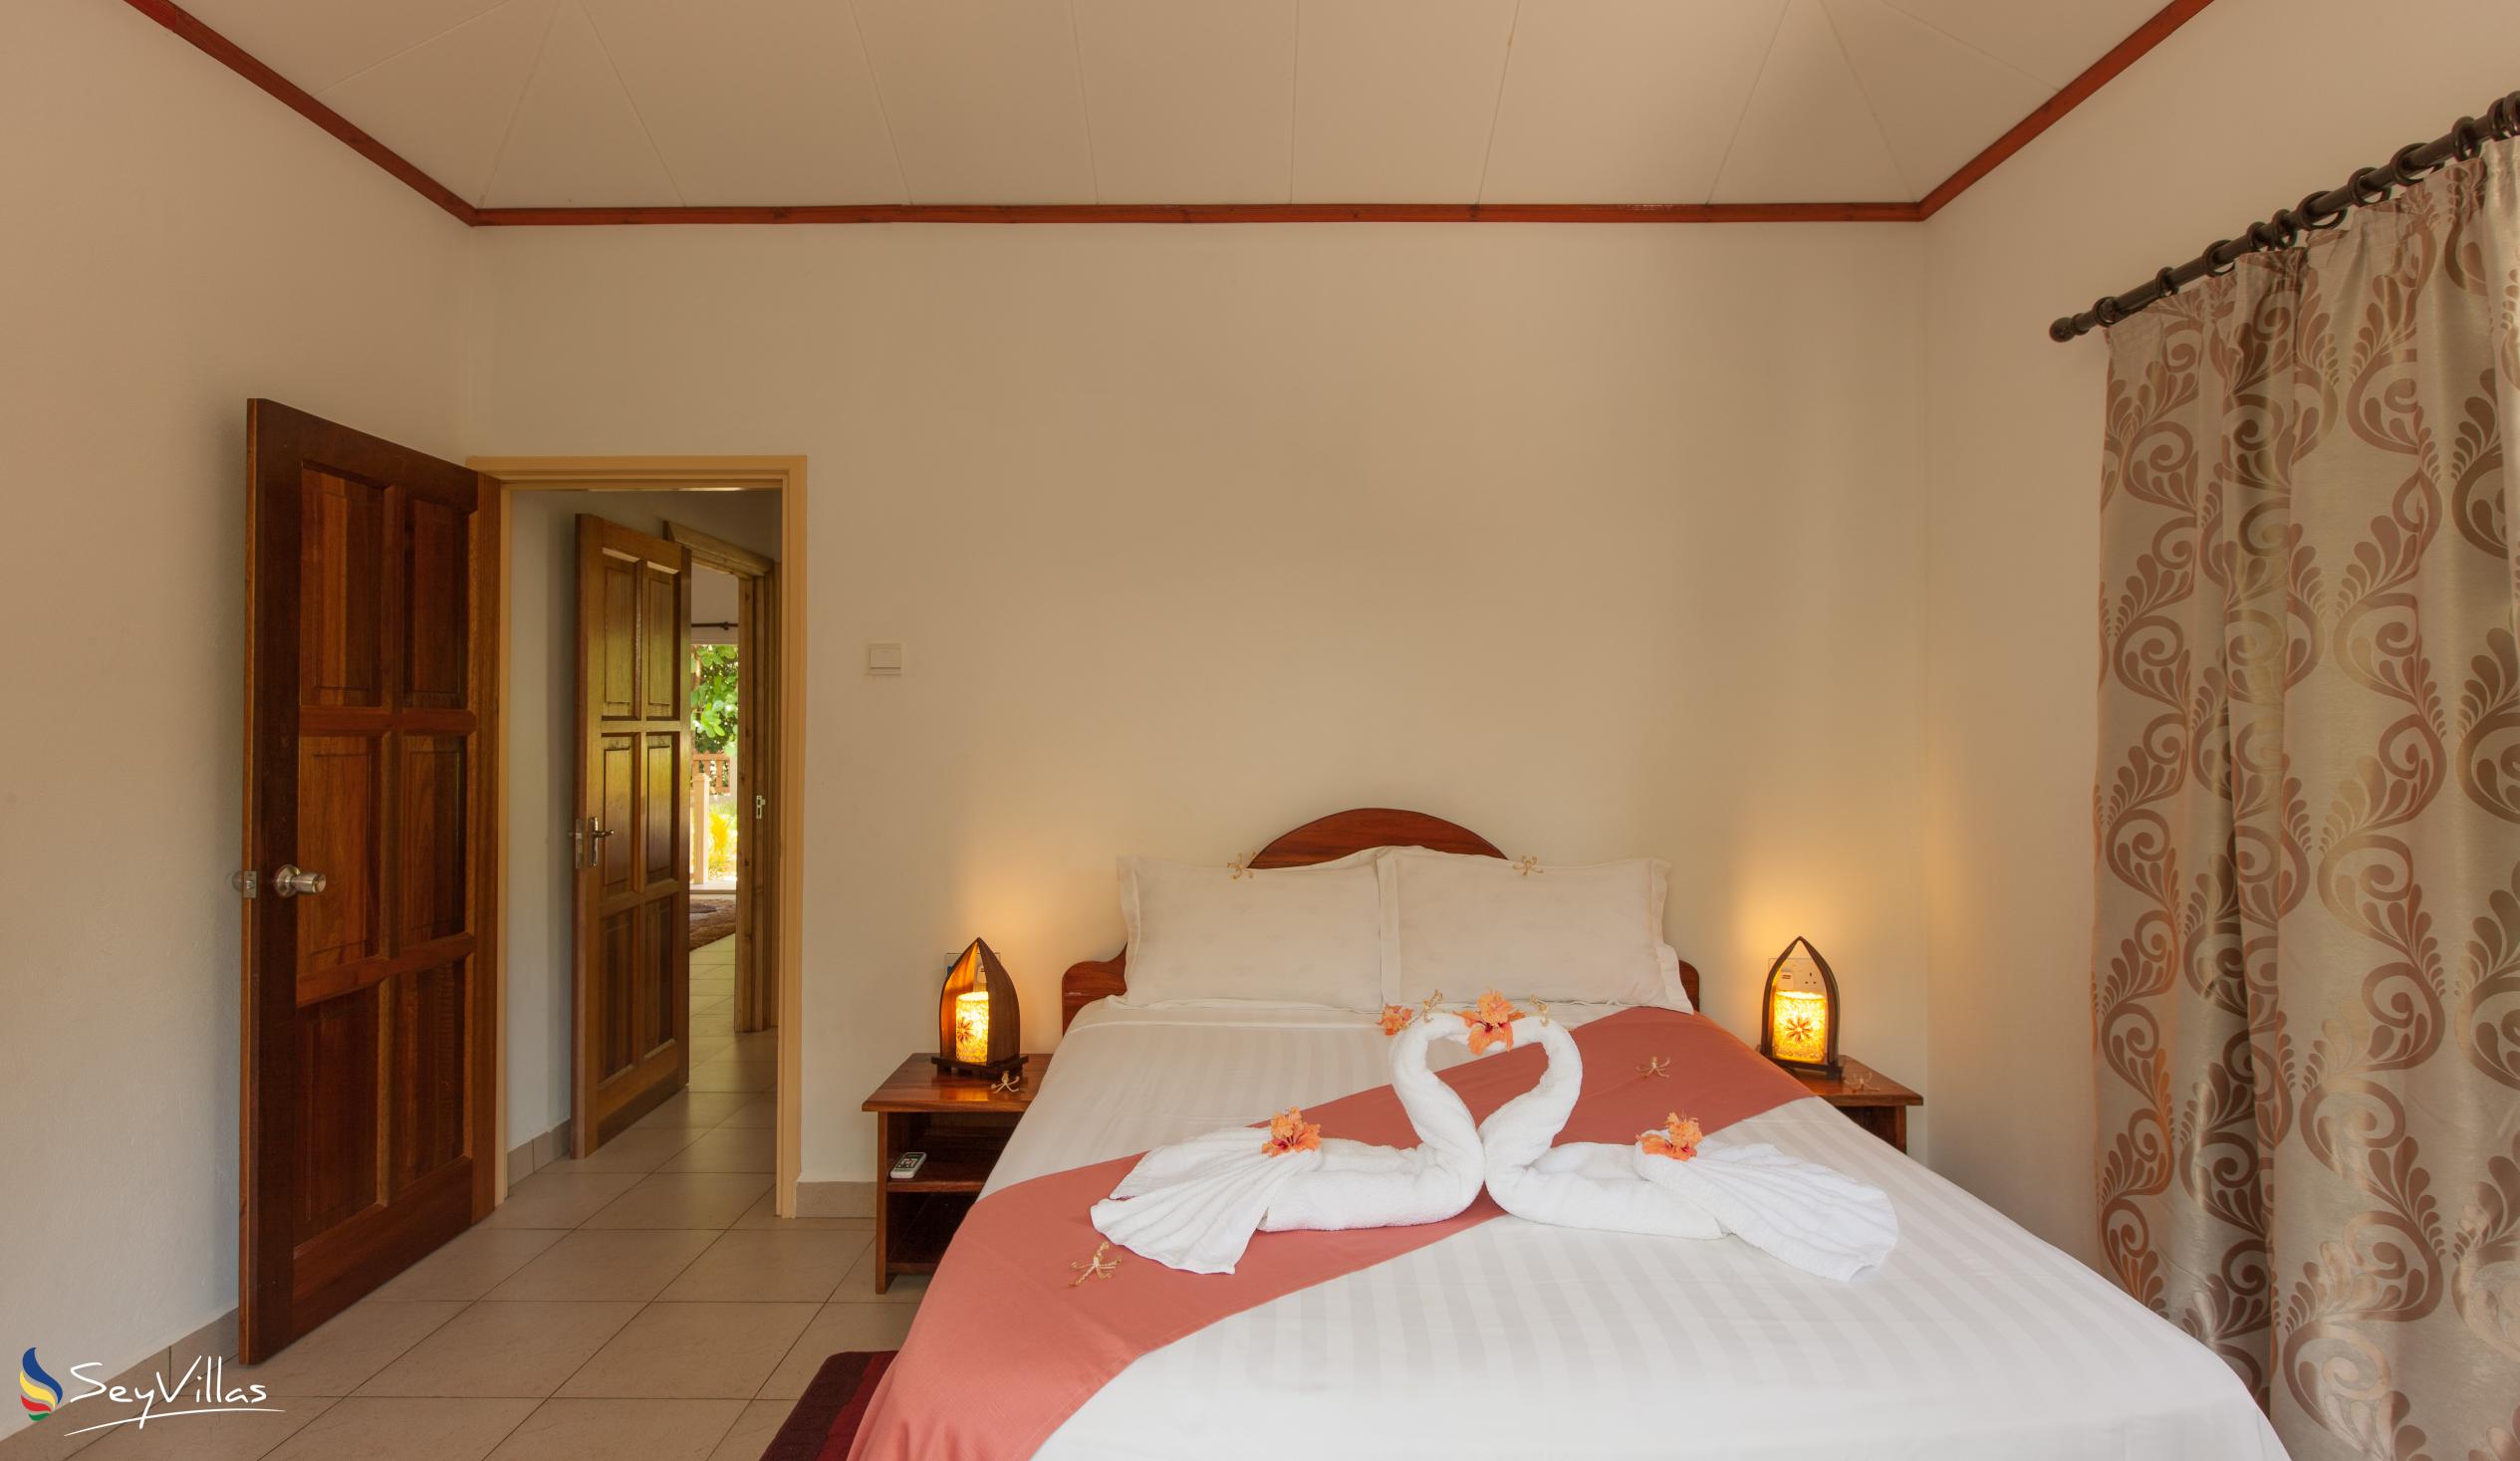 Foto 24: Hostellerie La Digue - Chalet 3 chambres - La Digue (Seychelles)